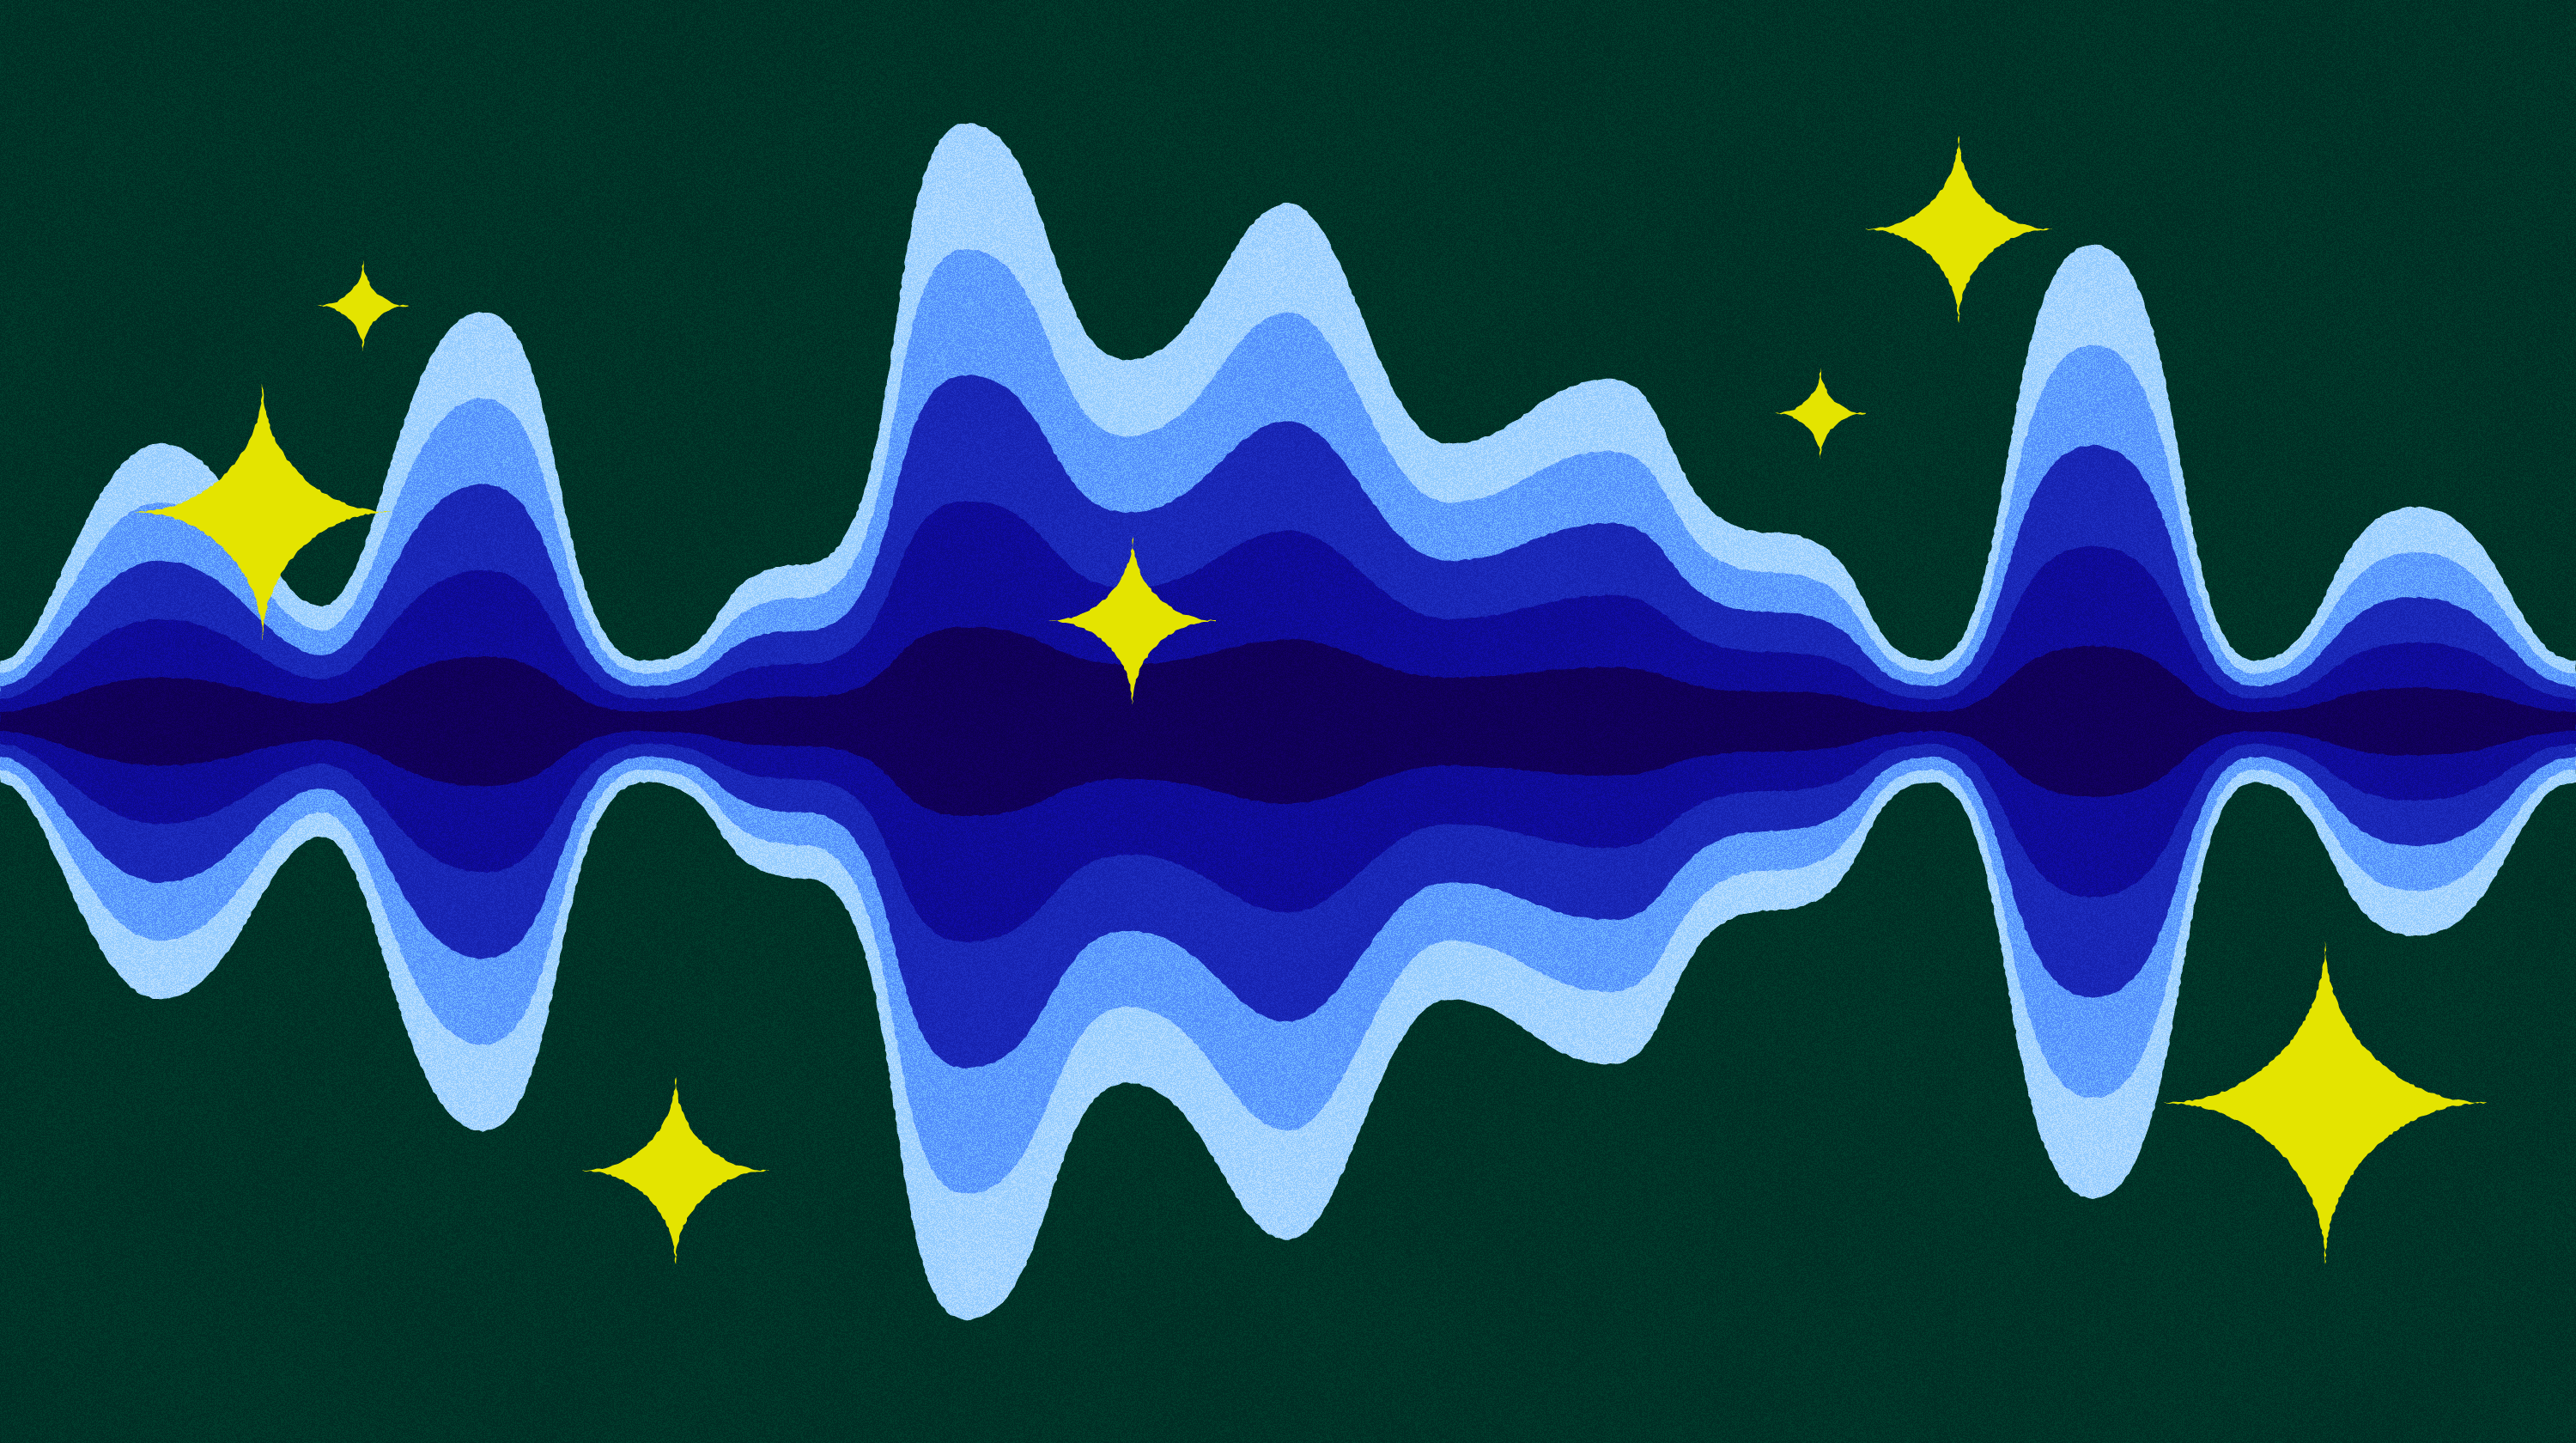 sound wave illustration